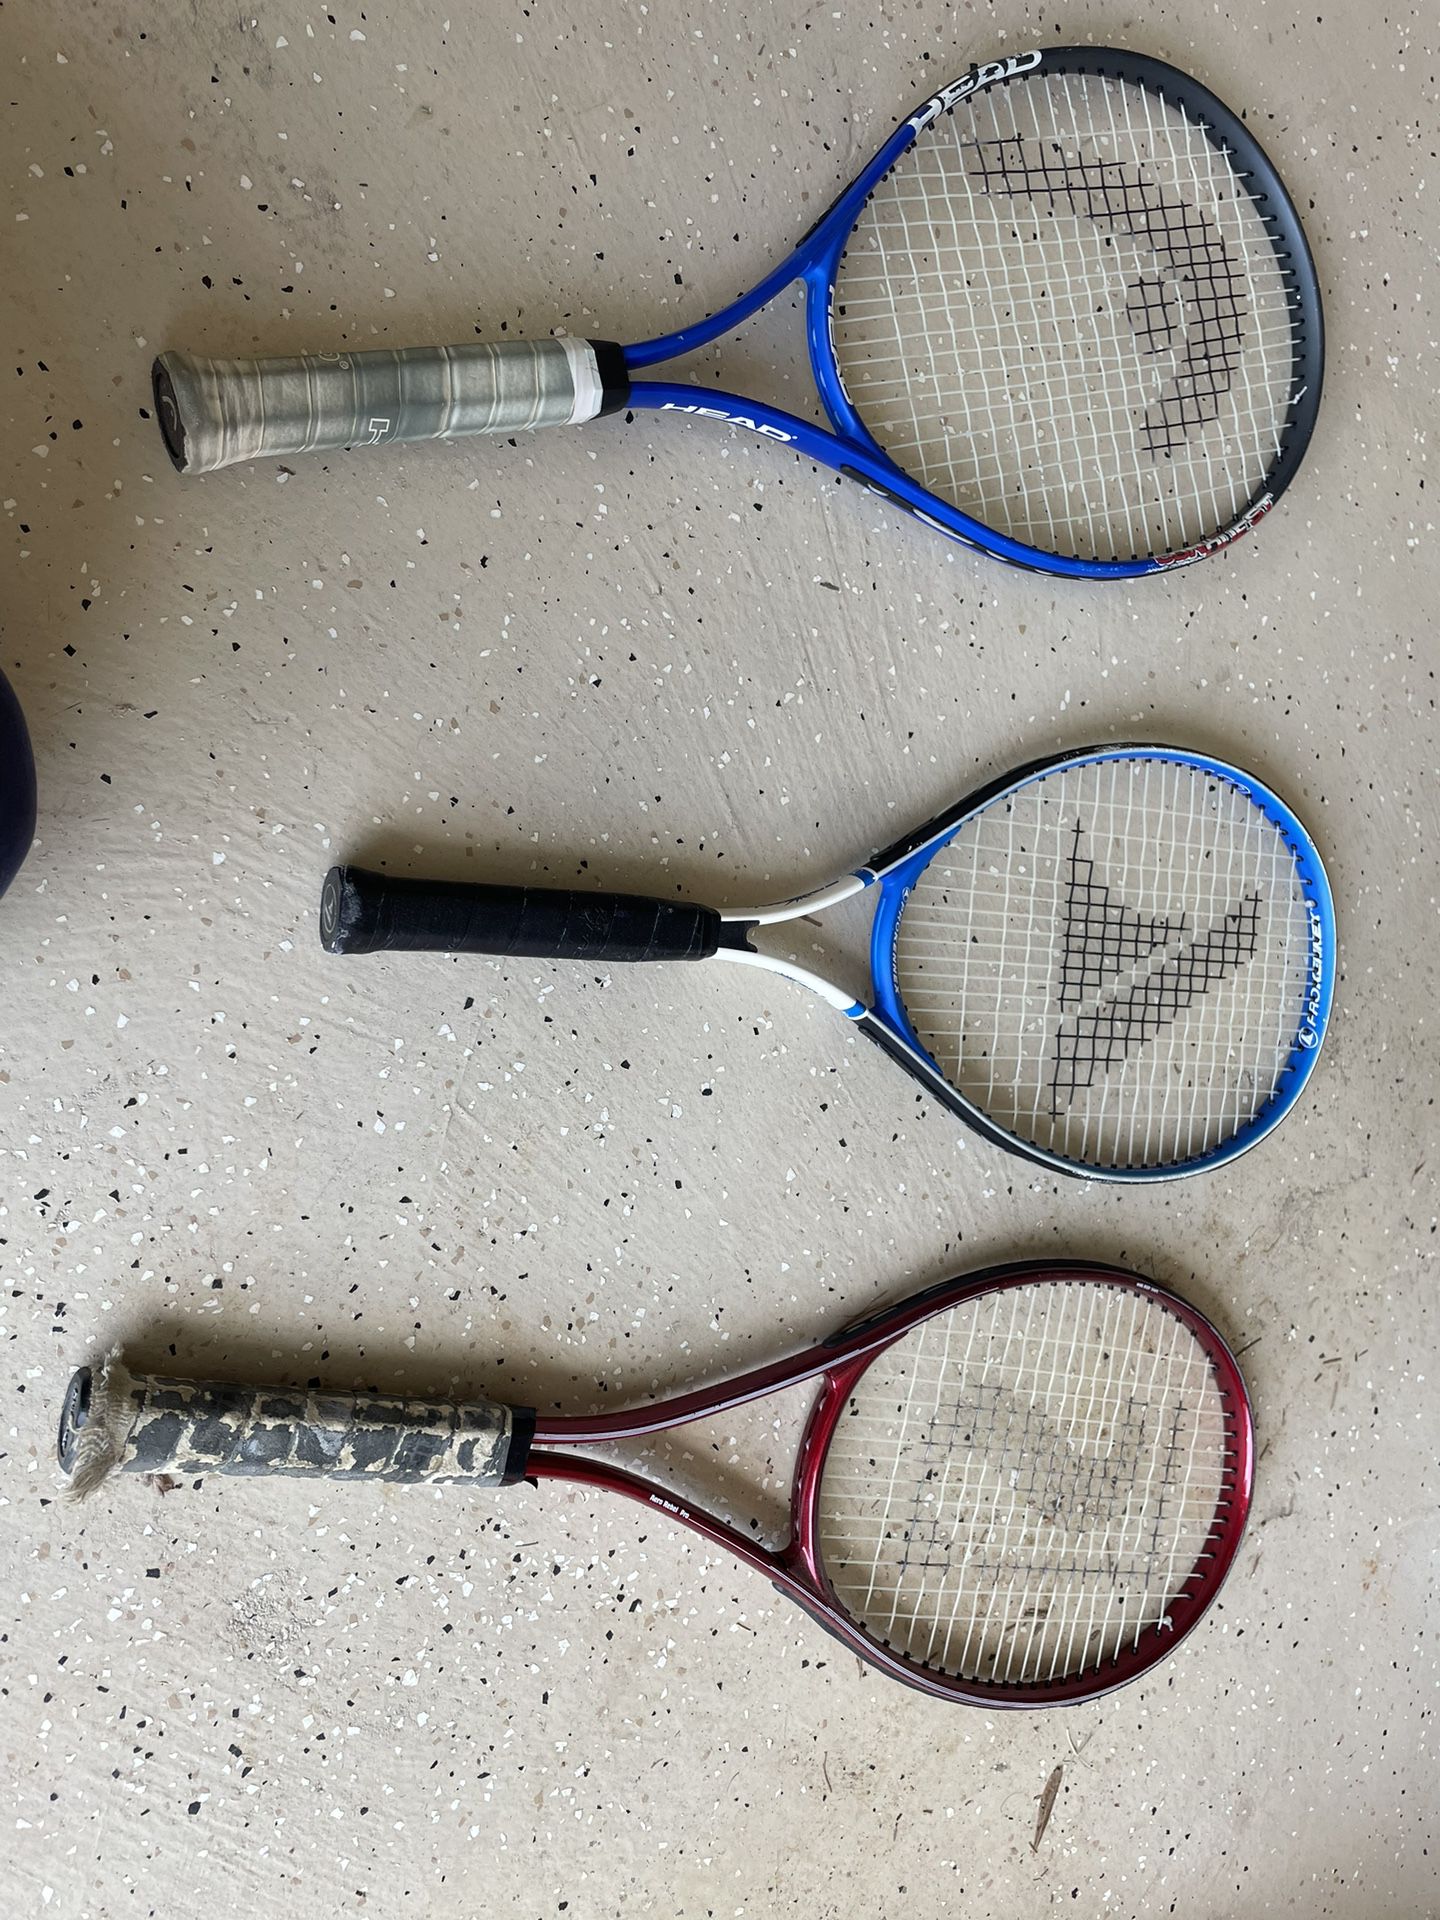  3 Tennis Rackets